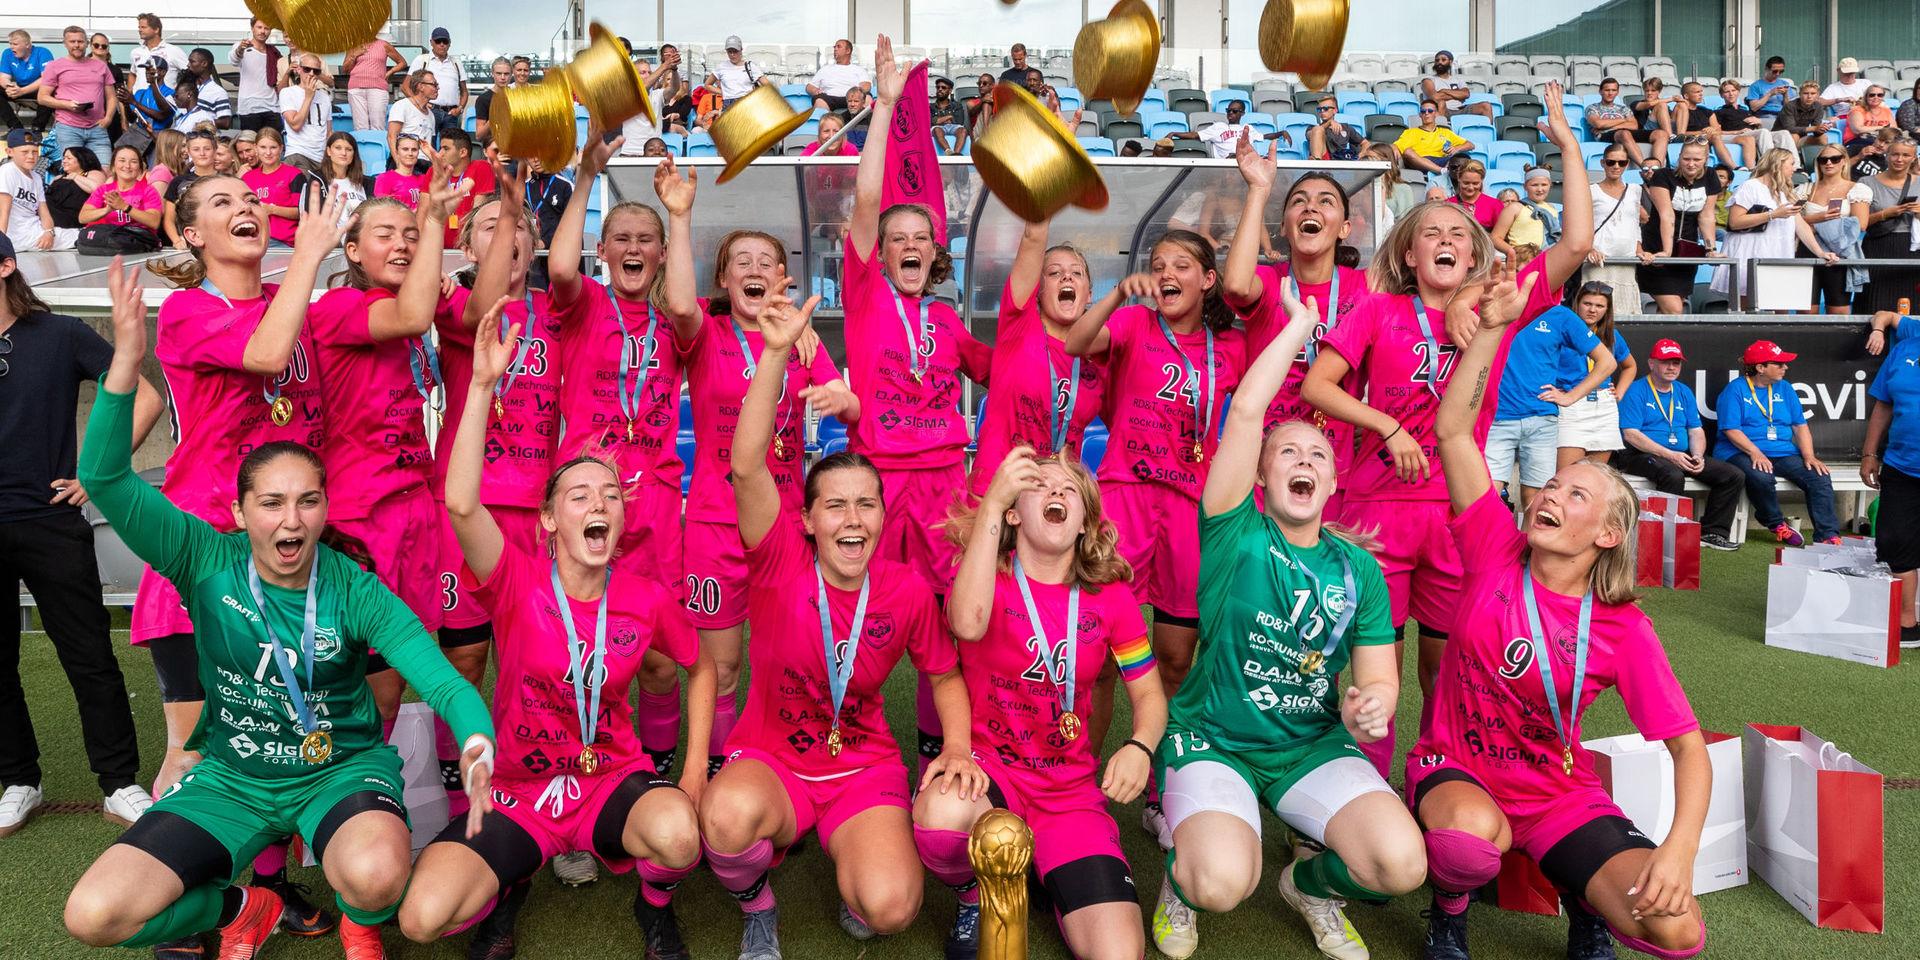 Göteborg jublar efter segern i finalen under Gothia cup i flickor 18 år. Näst längst ner till höger är Louise Persson från Svanesund.